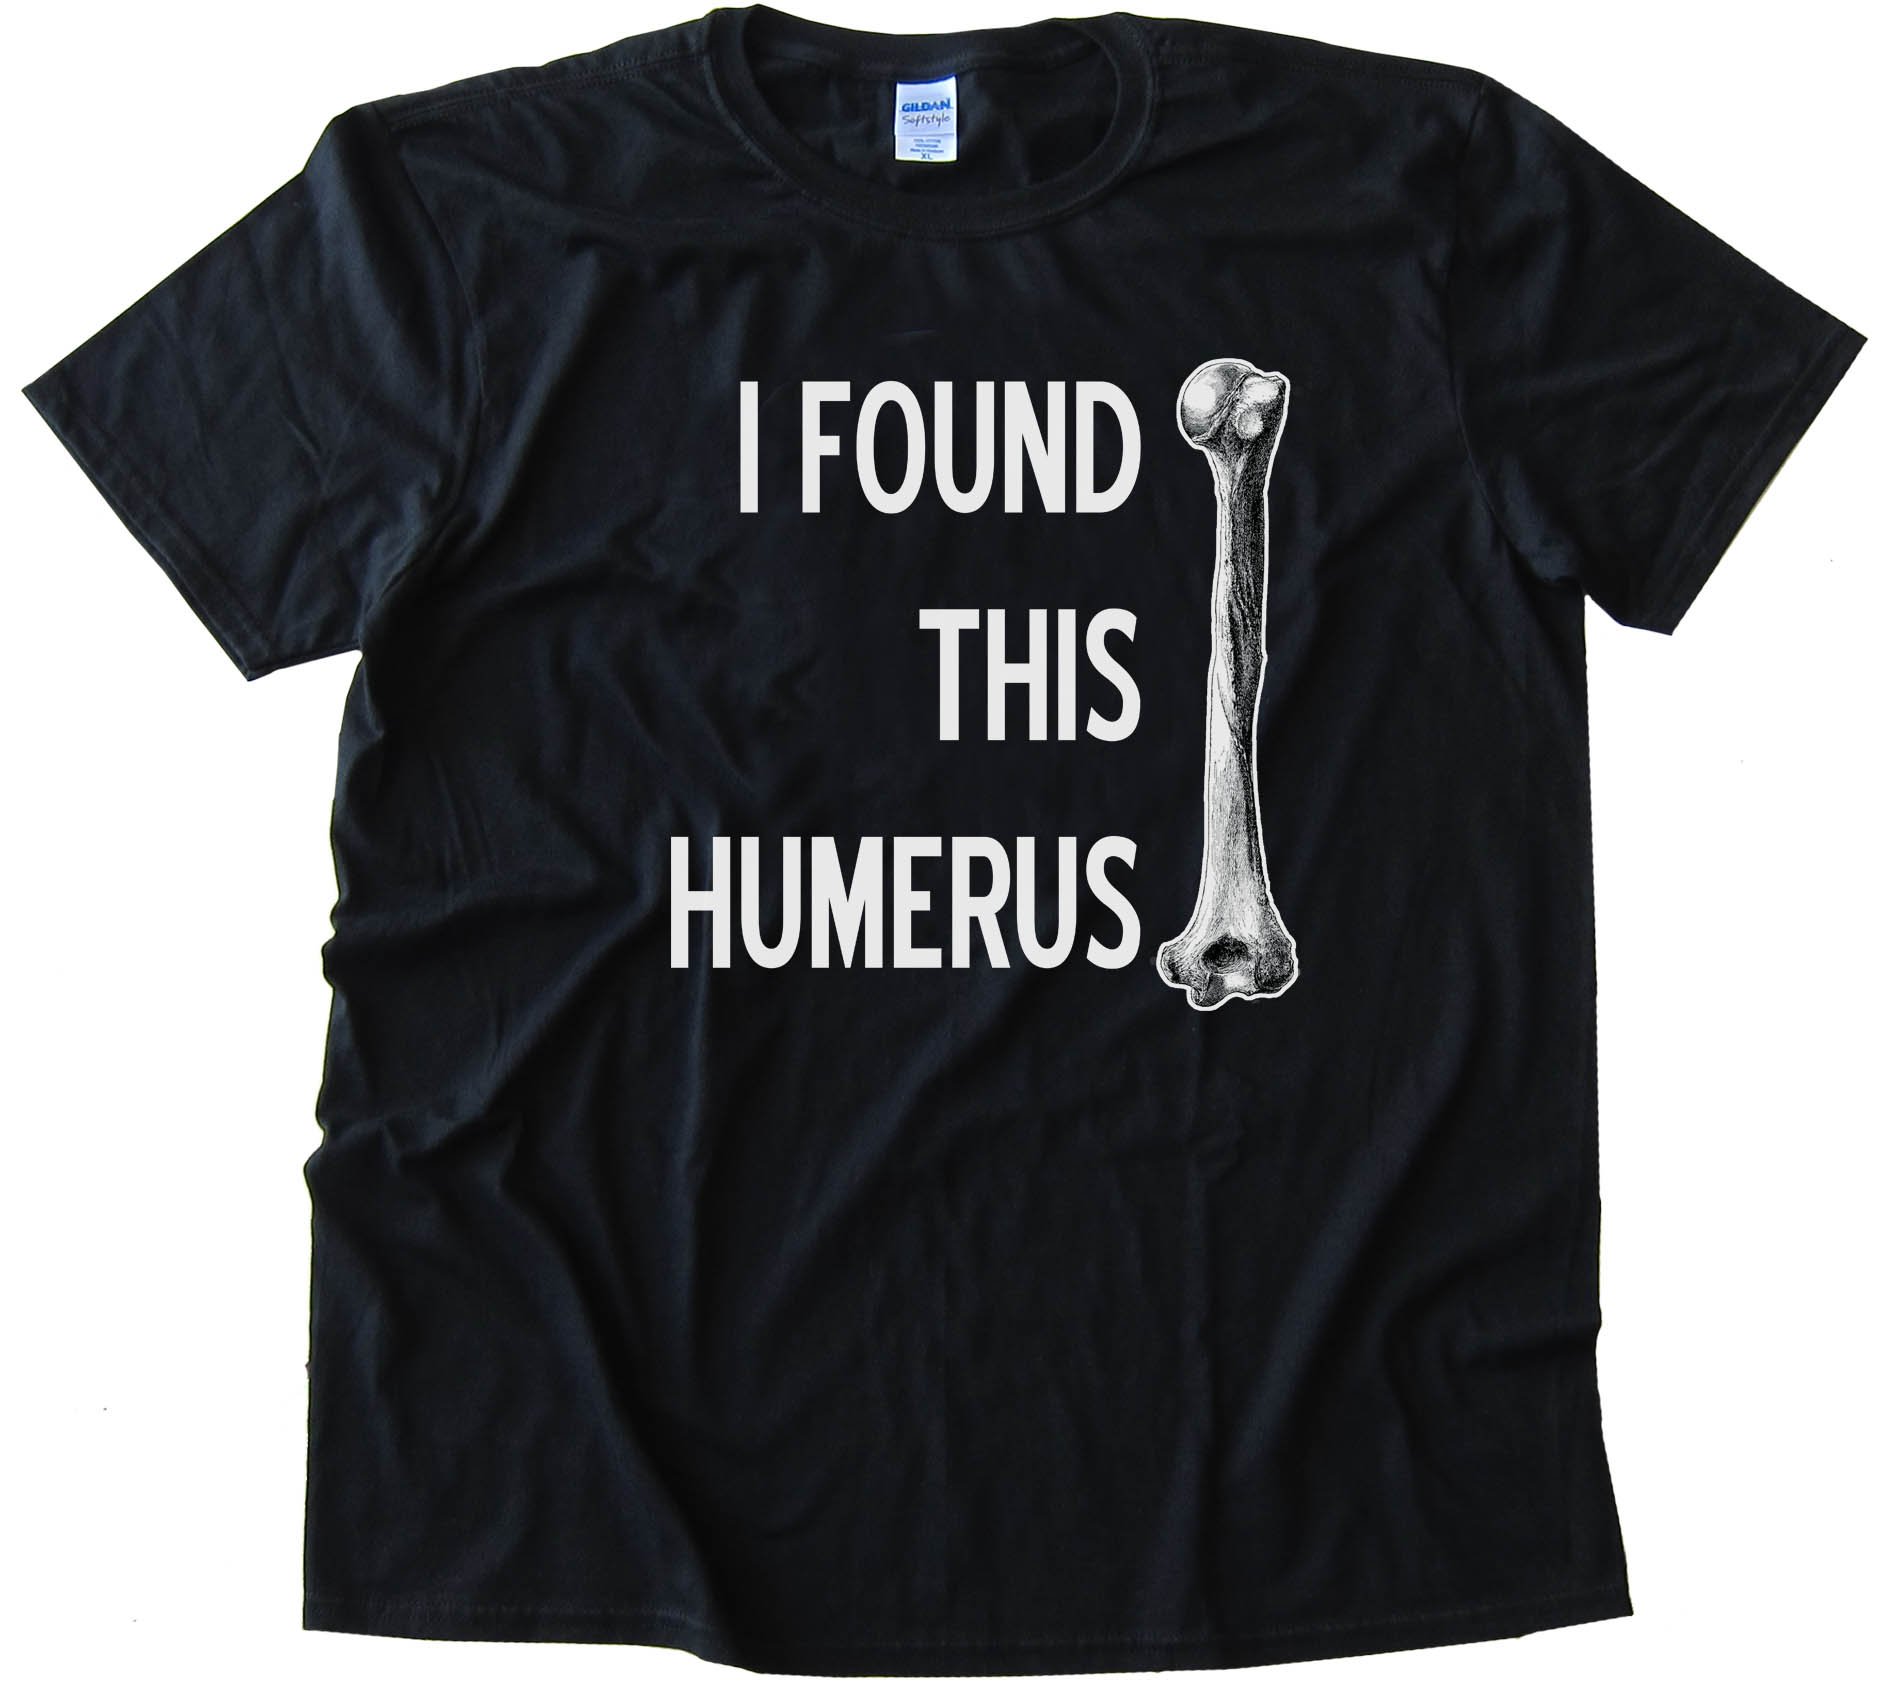 I Found This Humerus -- Tee Shirt